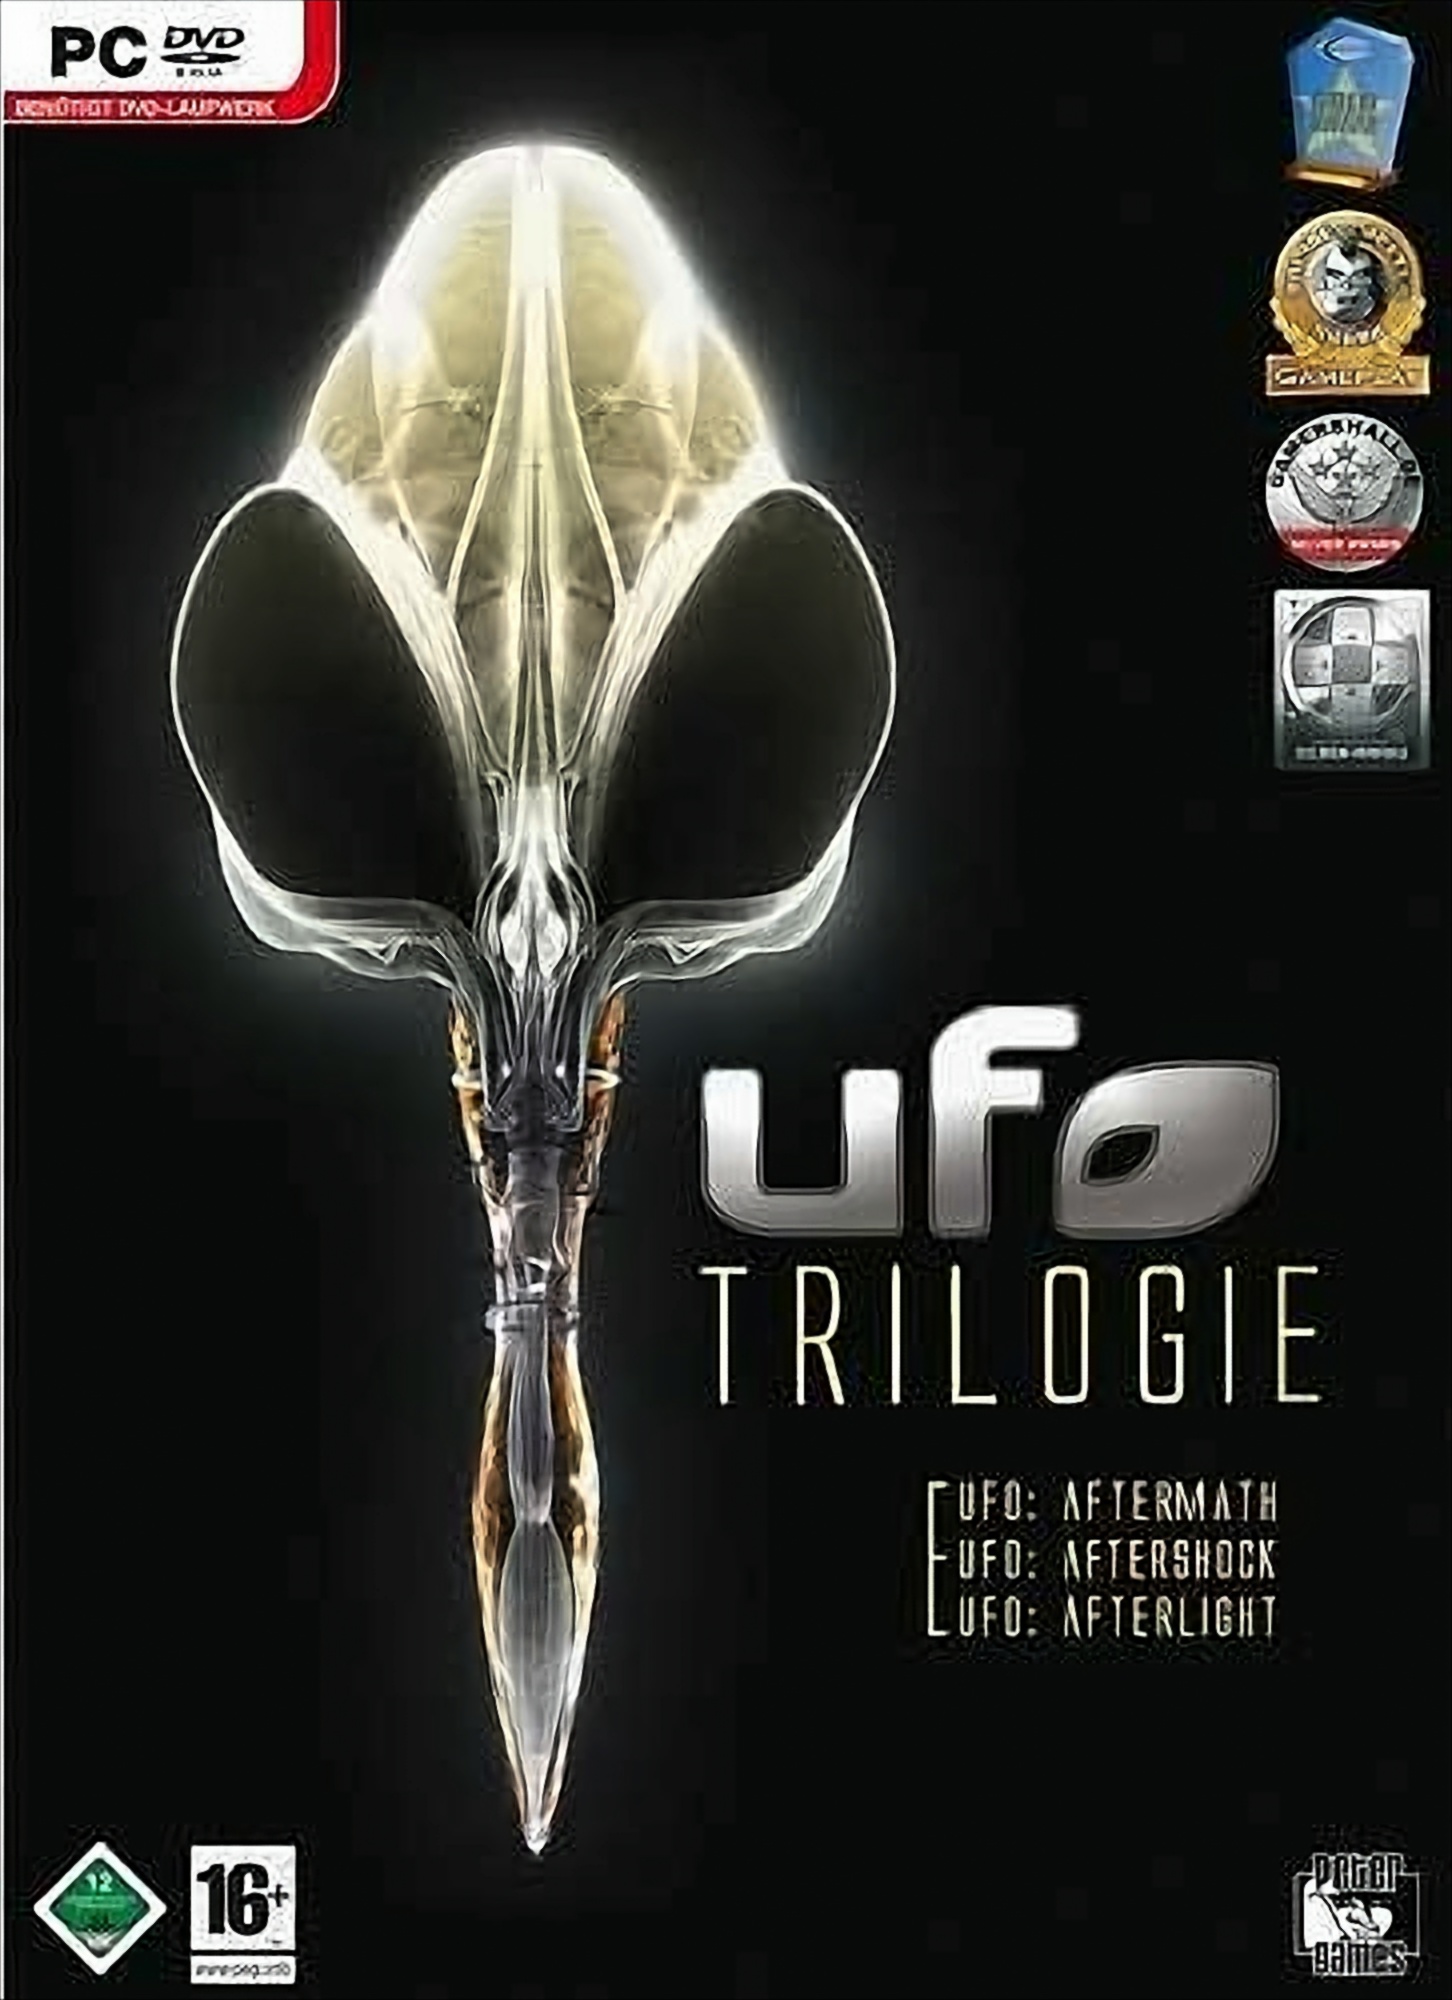 UFO Trilogie von HMH